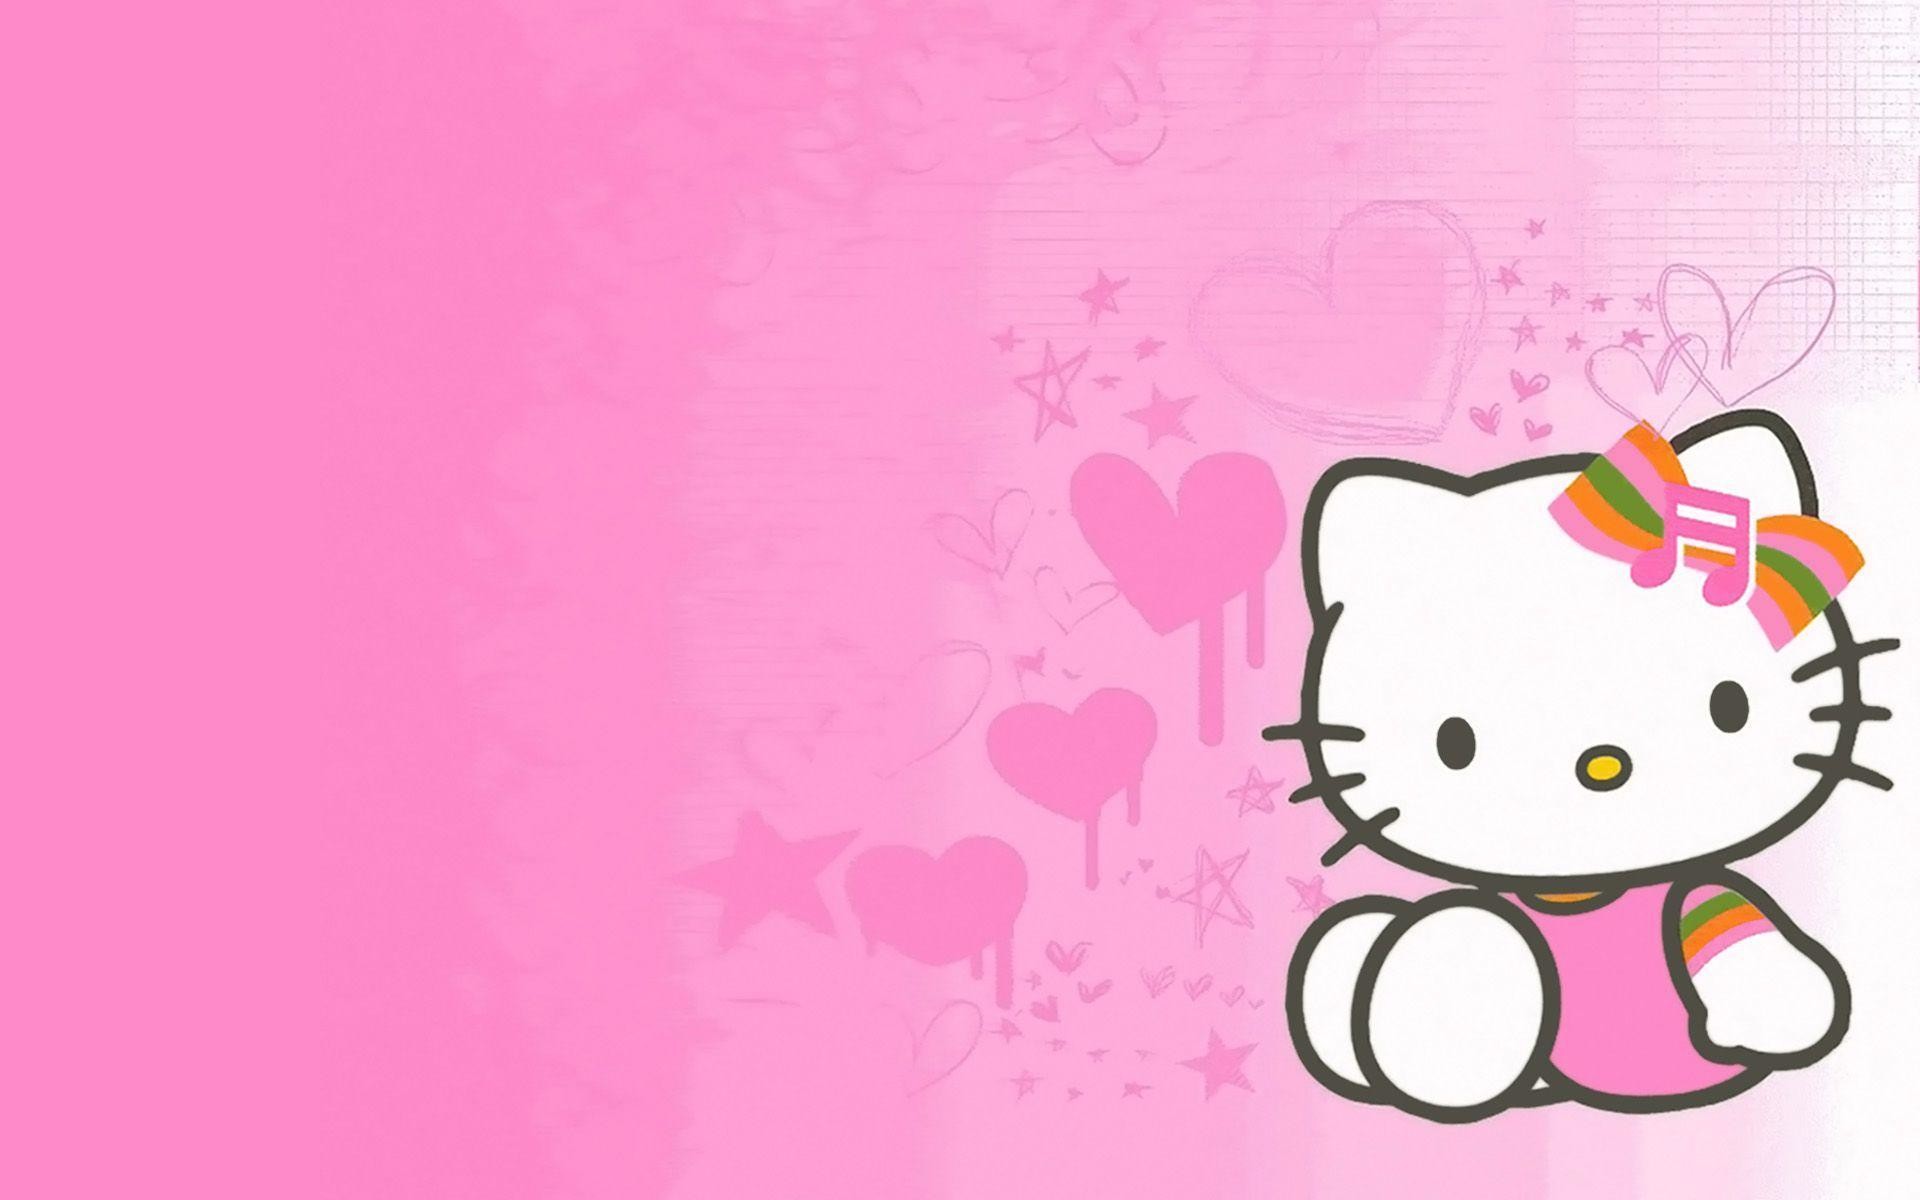 Hình nền Hello Kitty màu hồng, đưa bạn trở lại tuổi thơ ngọt ngào. Chú mèo Hello Kitty luôn gắn liền với nét đáng yêu và dễ thương, làm say đắm lòng người nhìn. Hãy đến và khám phá kho tàng hình nền Hello Kitty màu hồng, để tái hiện lại ký ức tuổi thơ đáng nhớ.